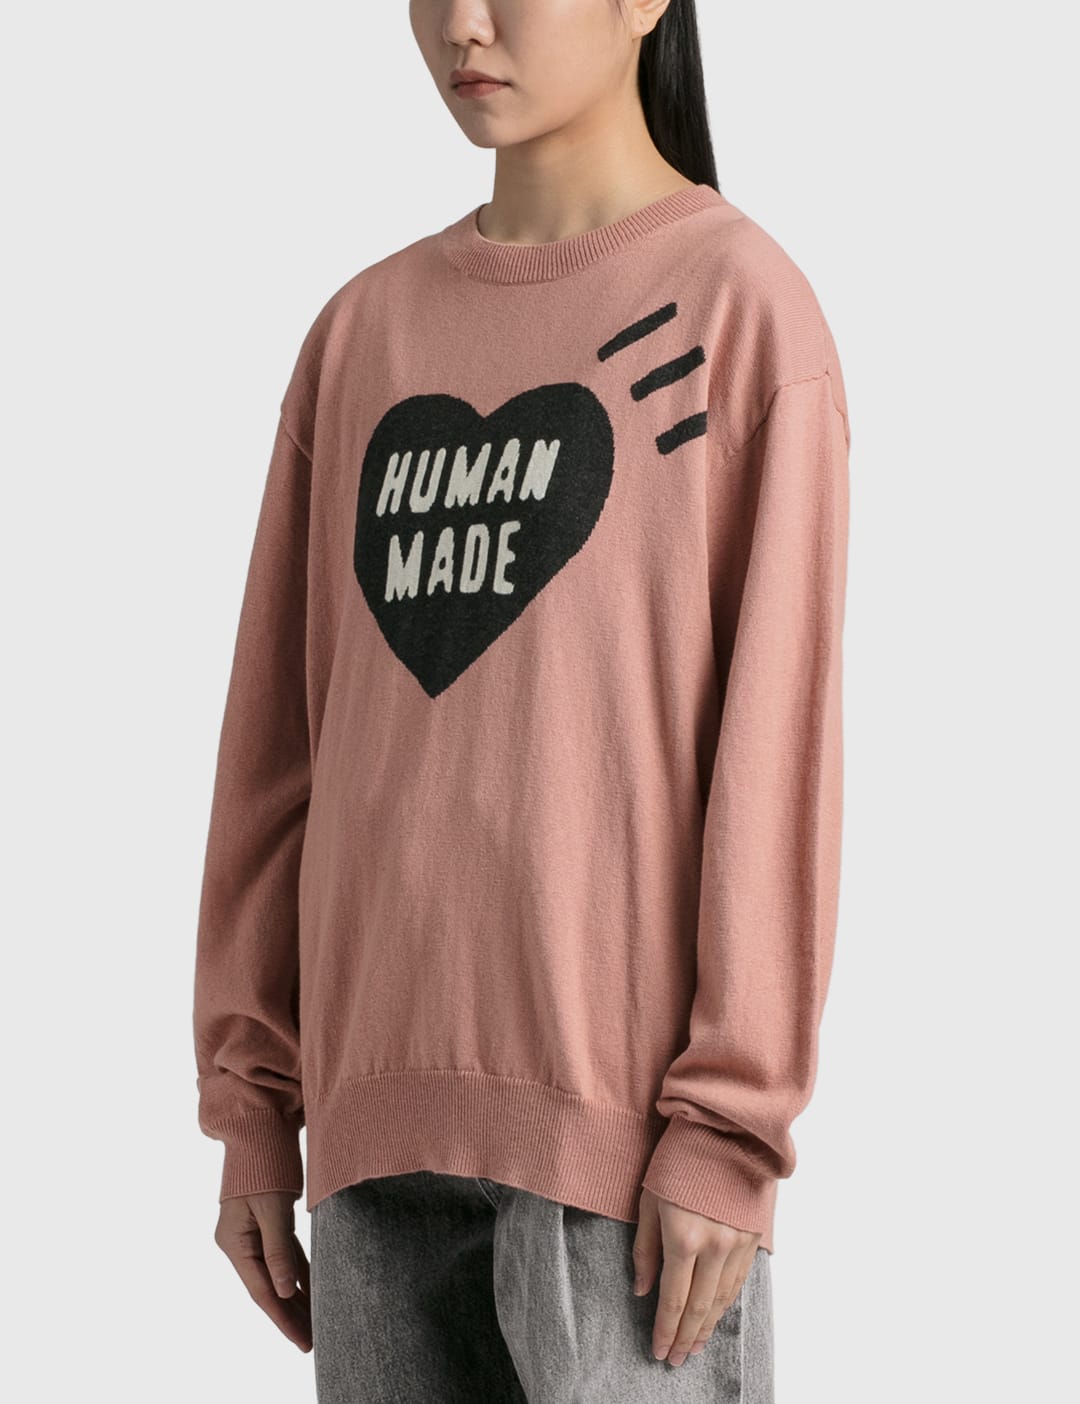 着丈67cmhuman made heart knit sweater pink